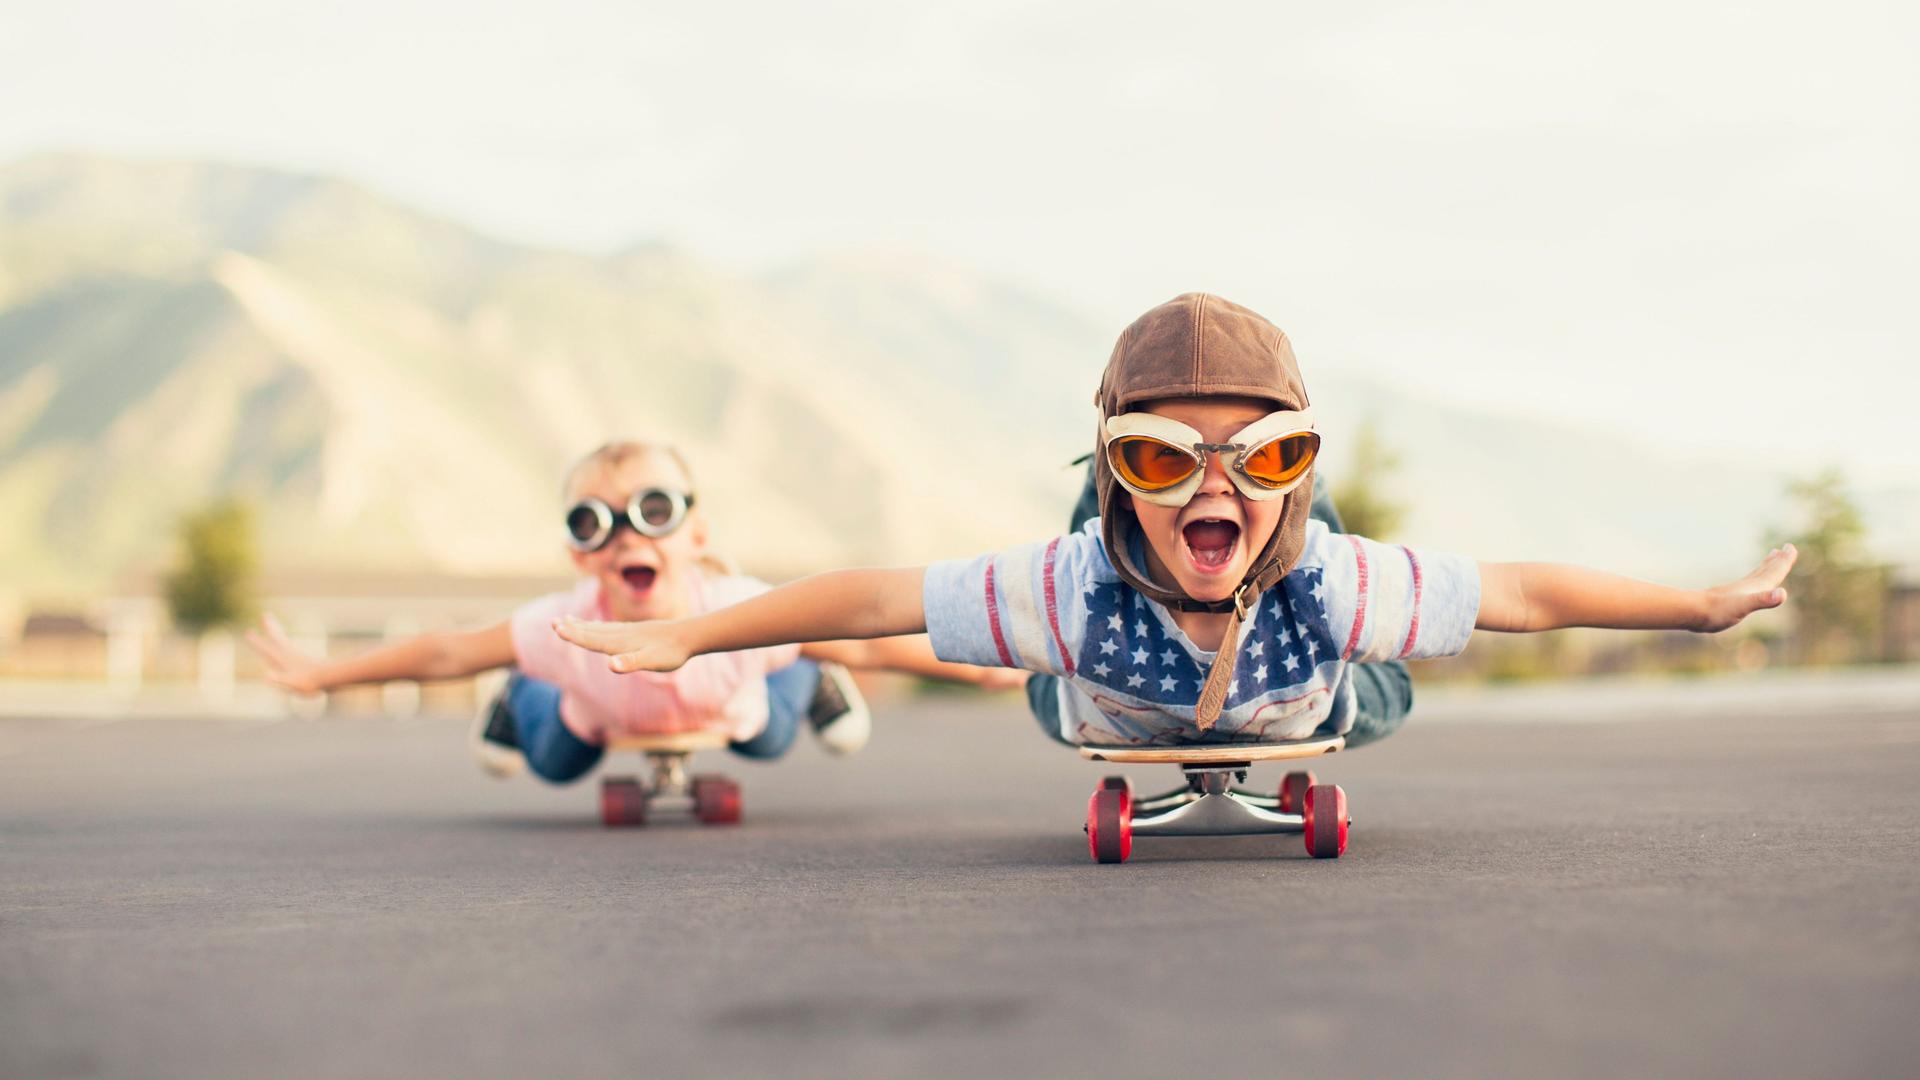 Zwei Kinder fahren bäuchlings auf einem Skateboard und strecken dabei die Arme aus als ob sie fliegen würden.